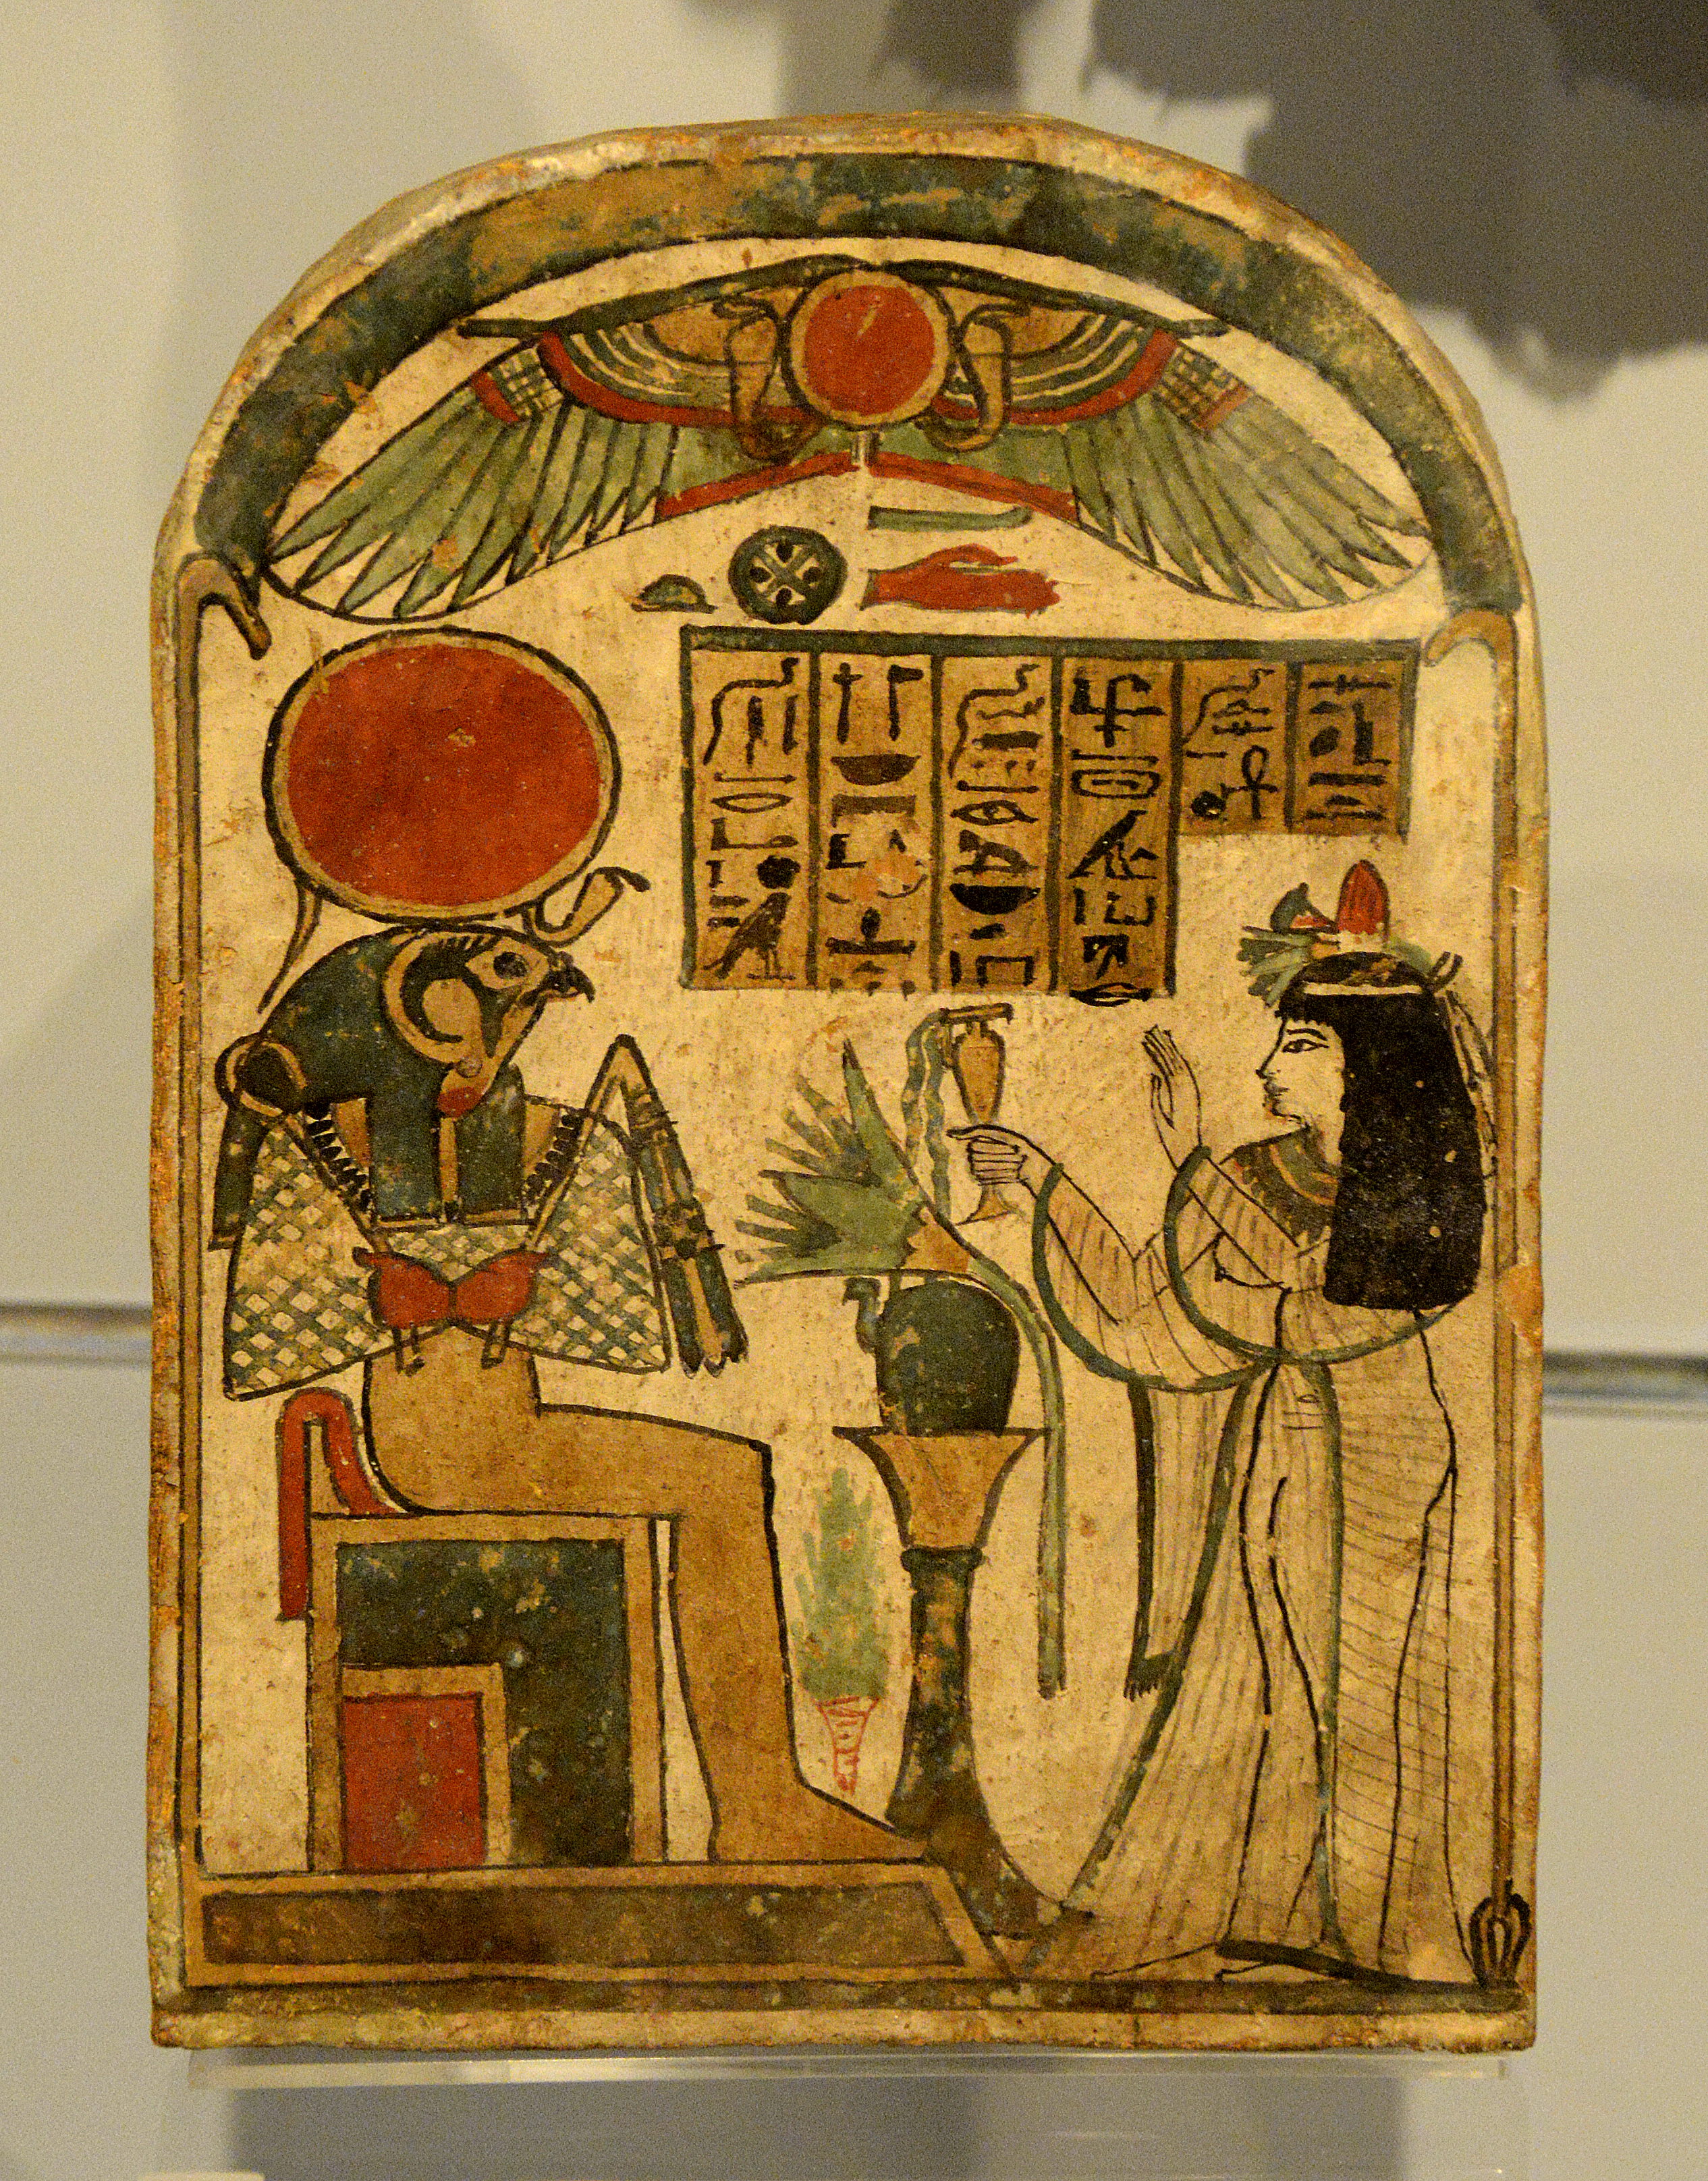 ra egyptian god drawing